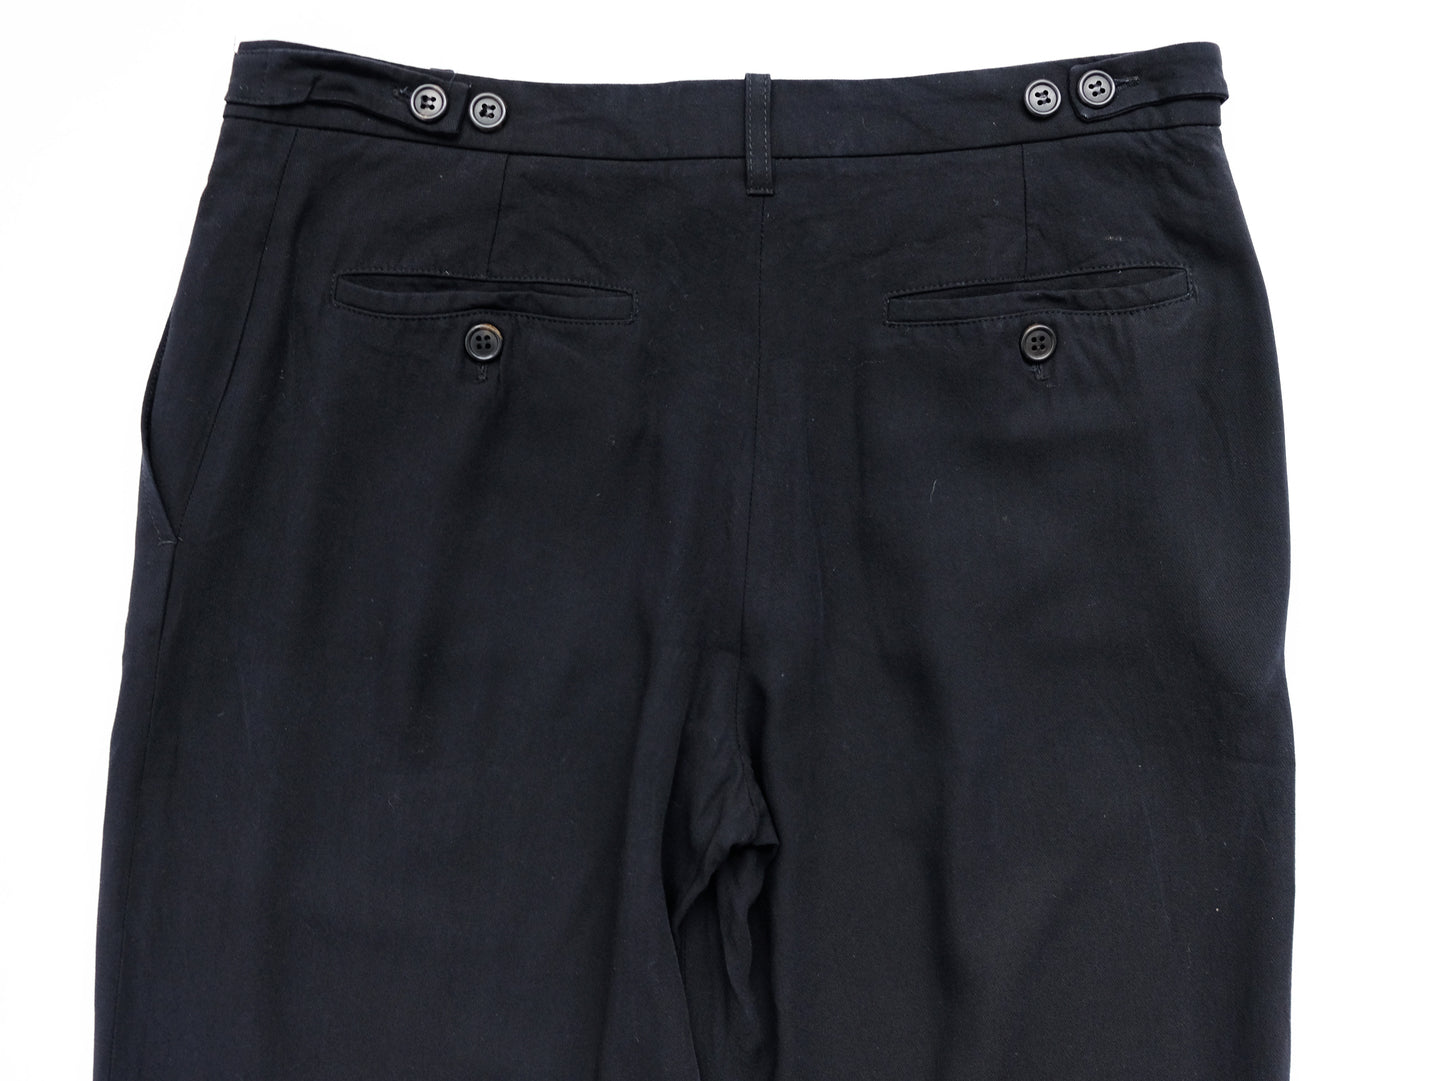 Ann Demeulemeester 1990s Vintage Minimalist Black Trousers, UK10